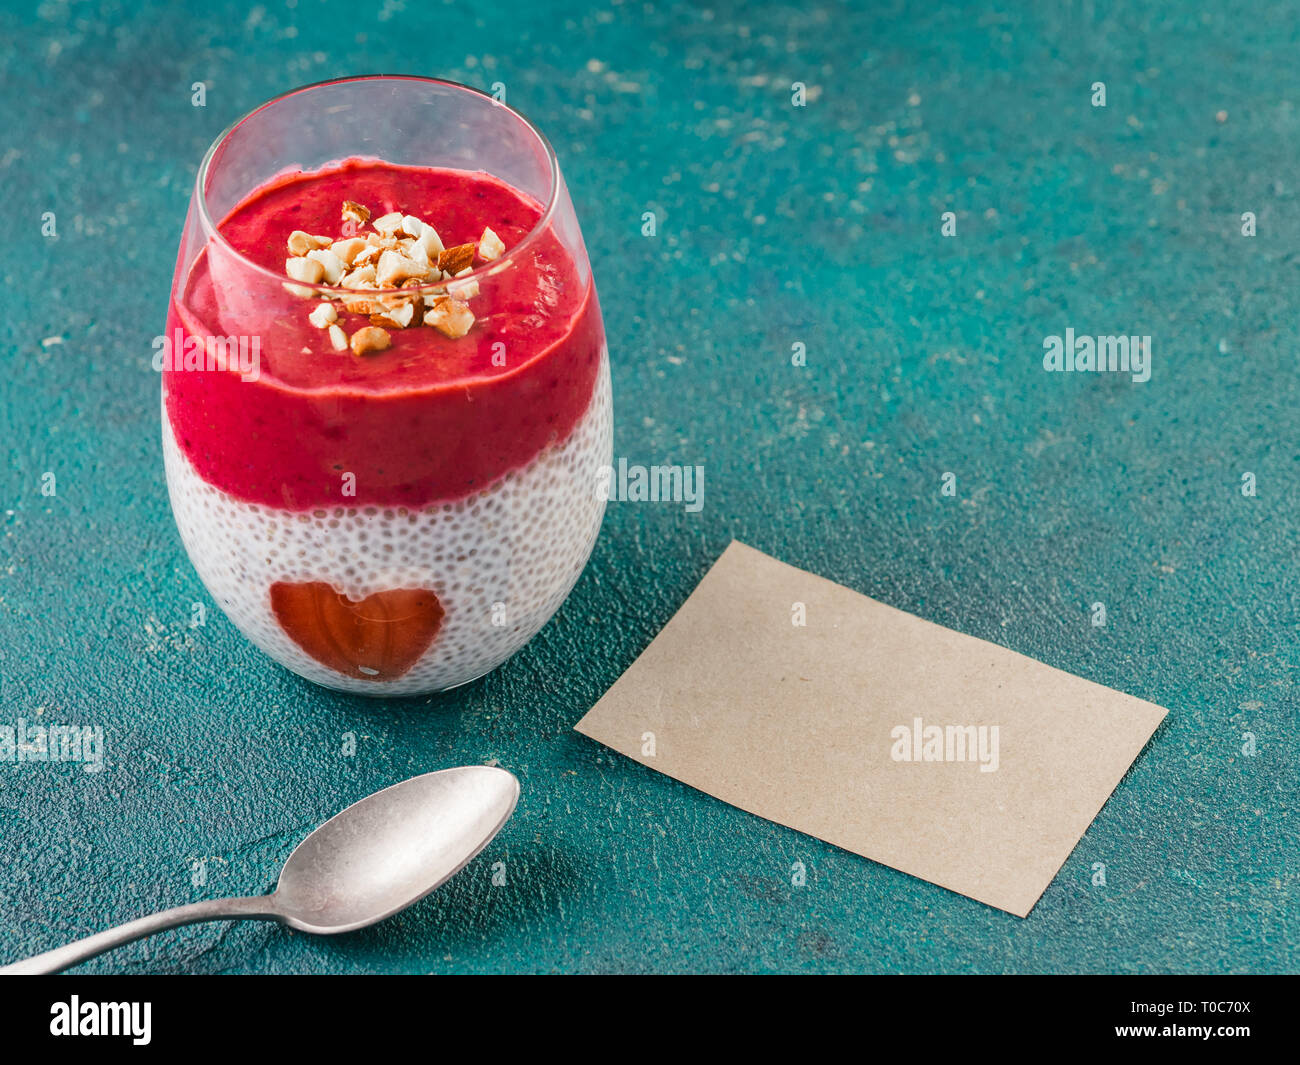 Idea para un desayuno saludable en el día de San Valentín: Chia pudding con  puré de baya roja, almendras picadas en la parte superior y fresa en forma  de corazón. Tarjeta de